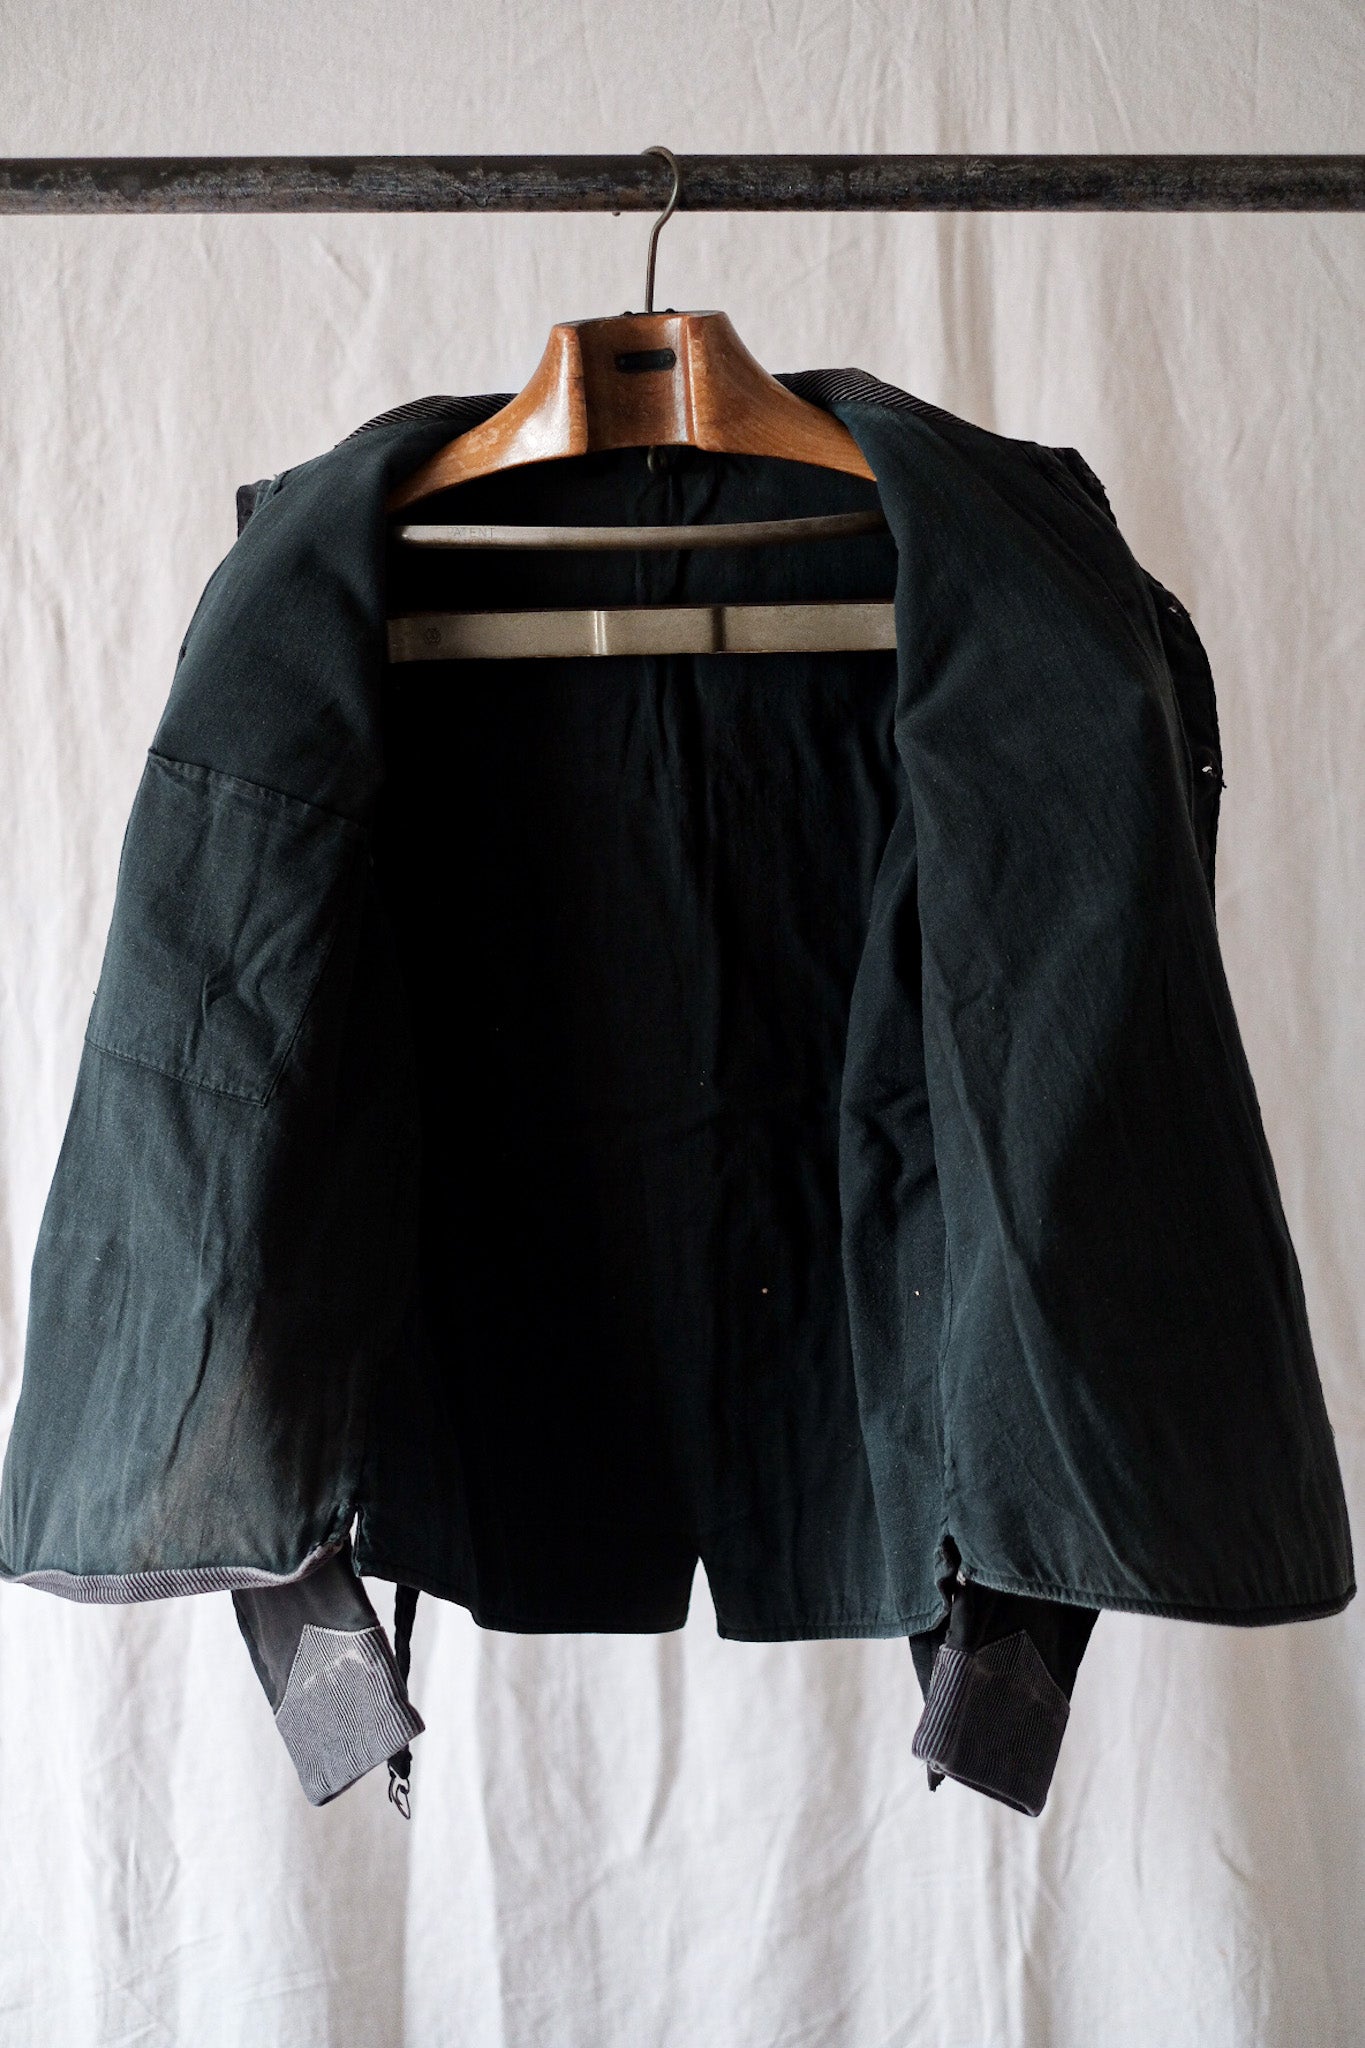 [〜50年代]比利時復古印刷的摩爾斯金雙胸部工作夾克